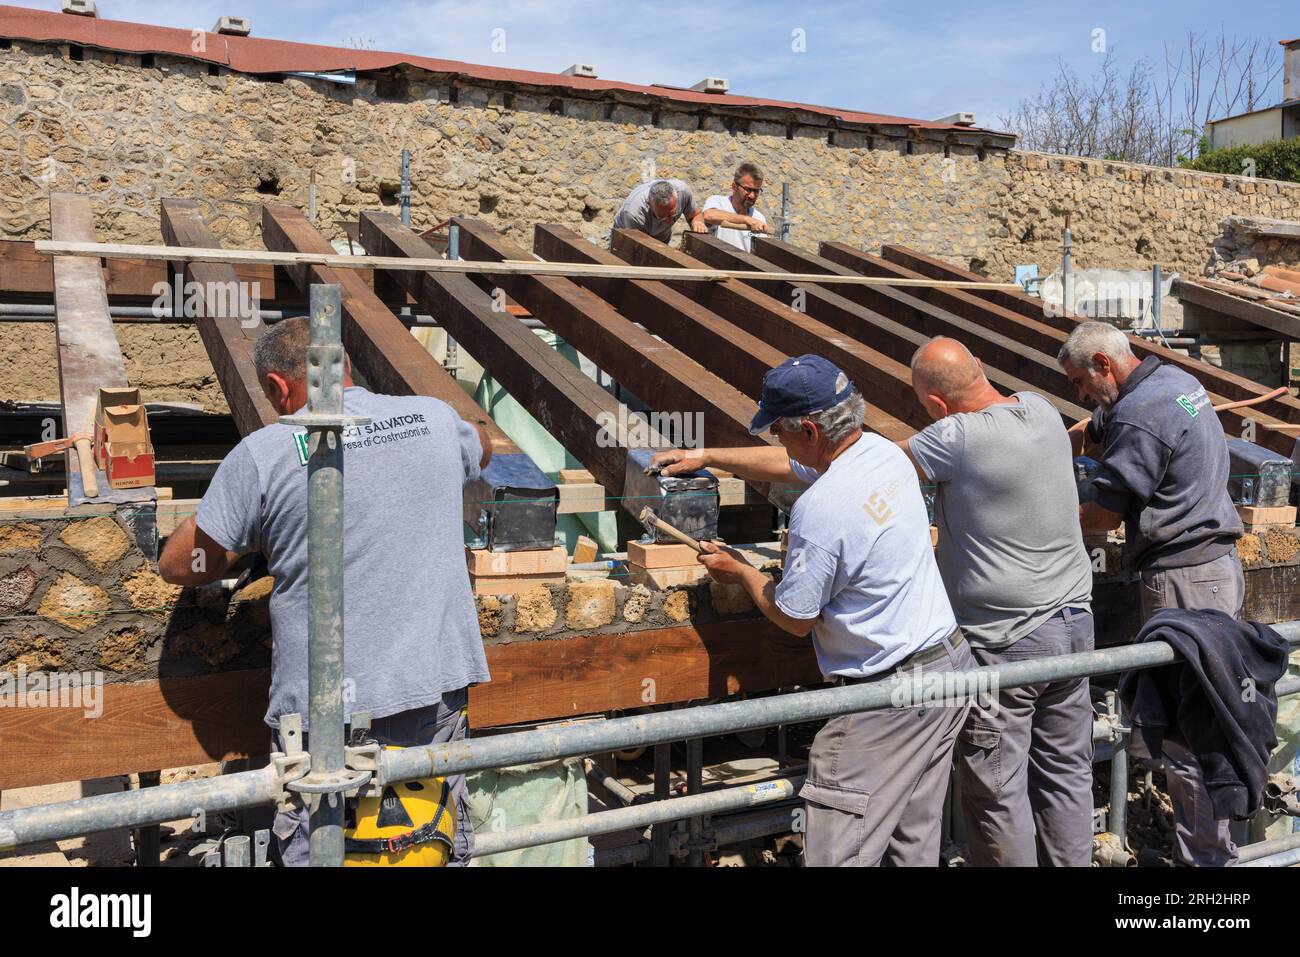 Sito archeologico di Pompei, Campania, Italia. Costruttori che lavorano su un tetto. La maggior parte dei tetti di Pompei crollò sotto il peso della cenere del Vesuvio. VIL Foto Stock